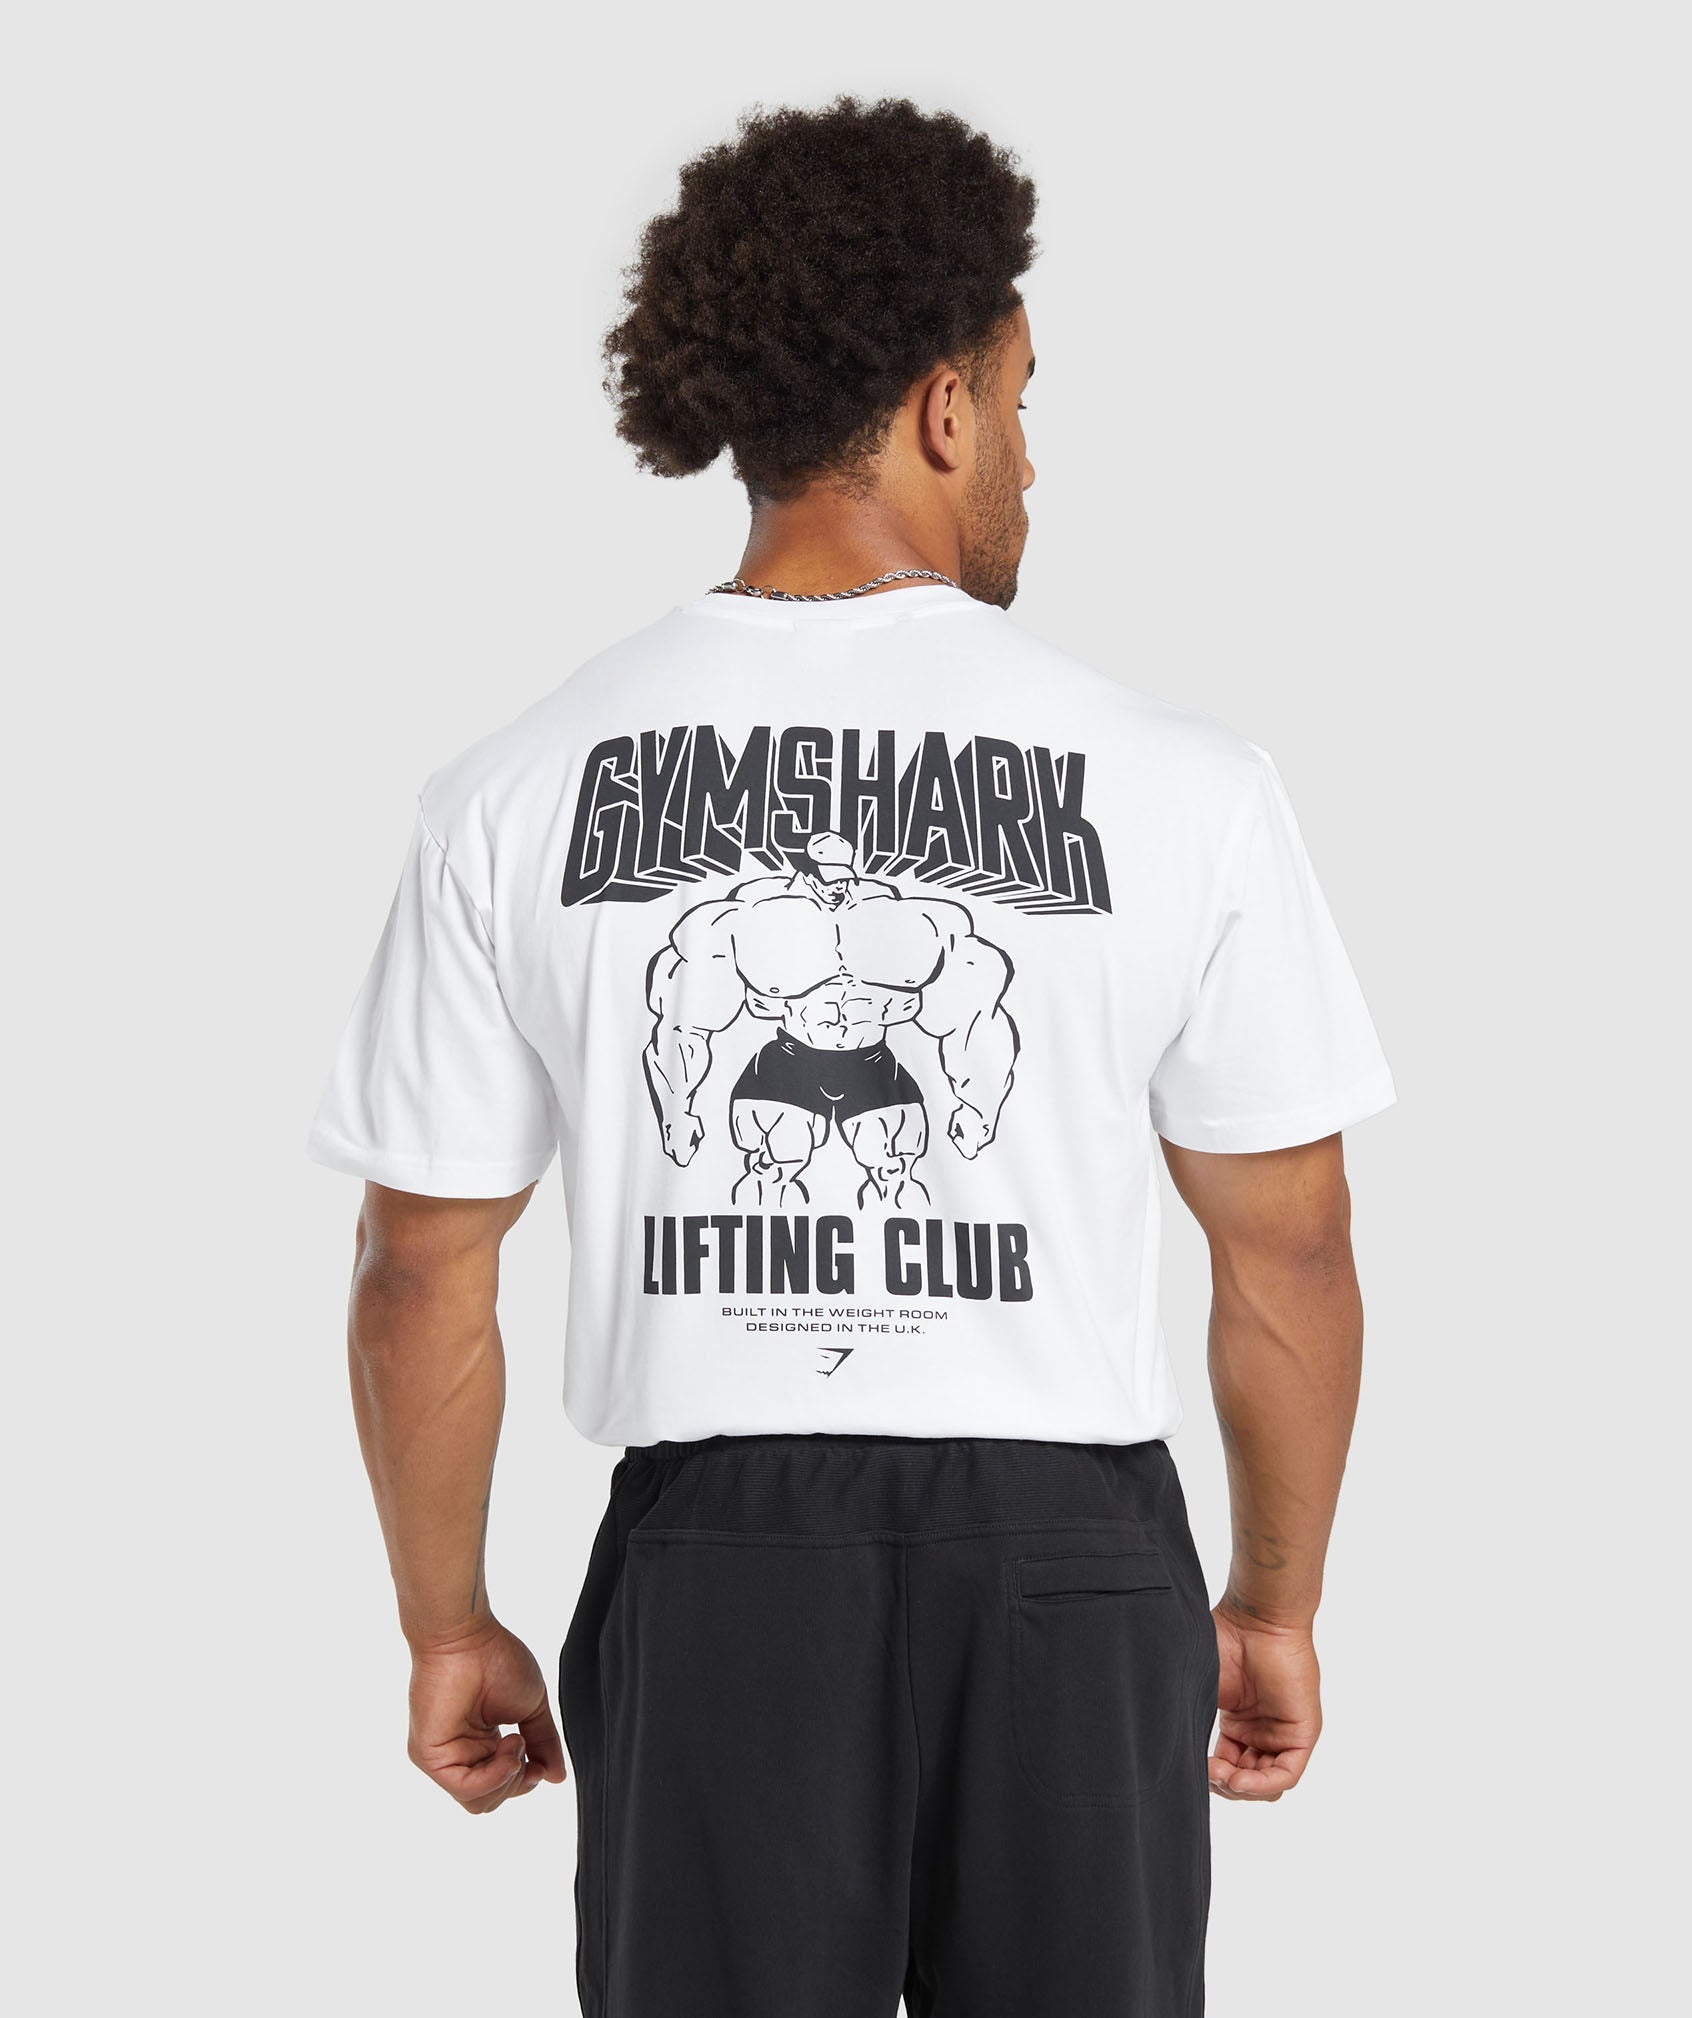 Camisetas de entrenamiento estampadas para hombres